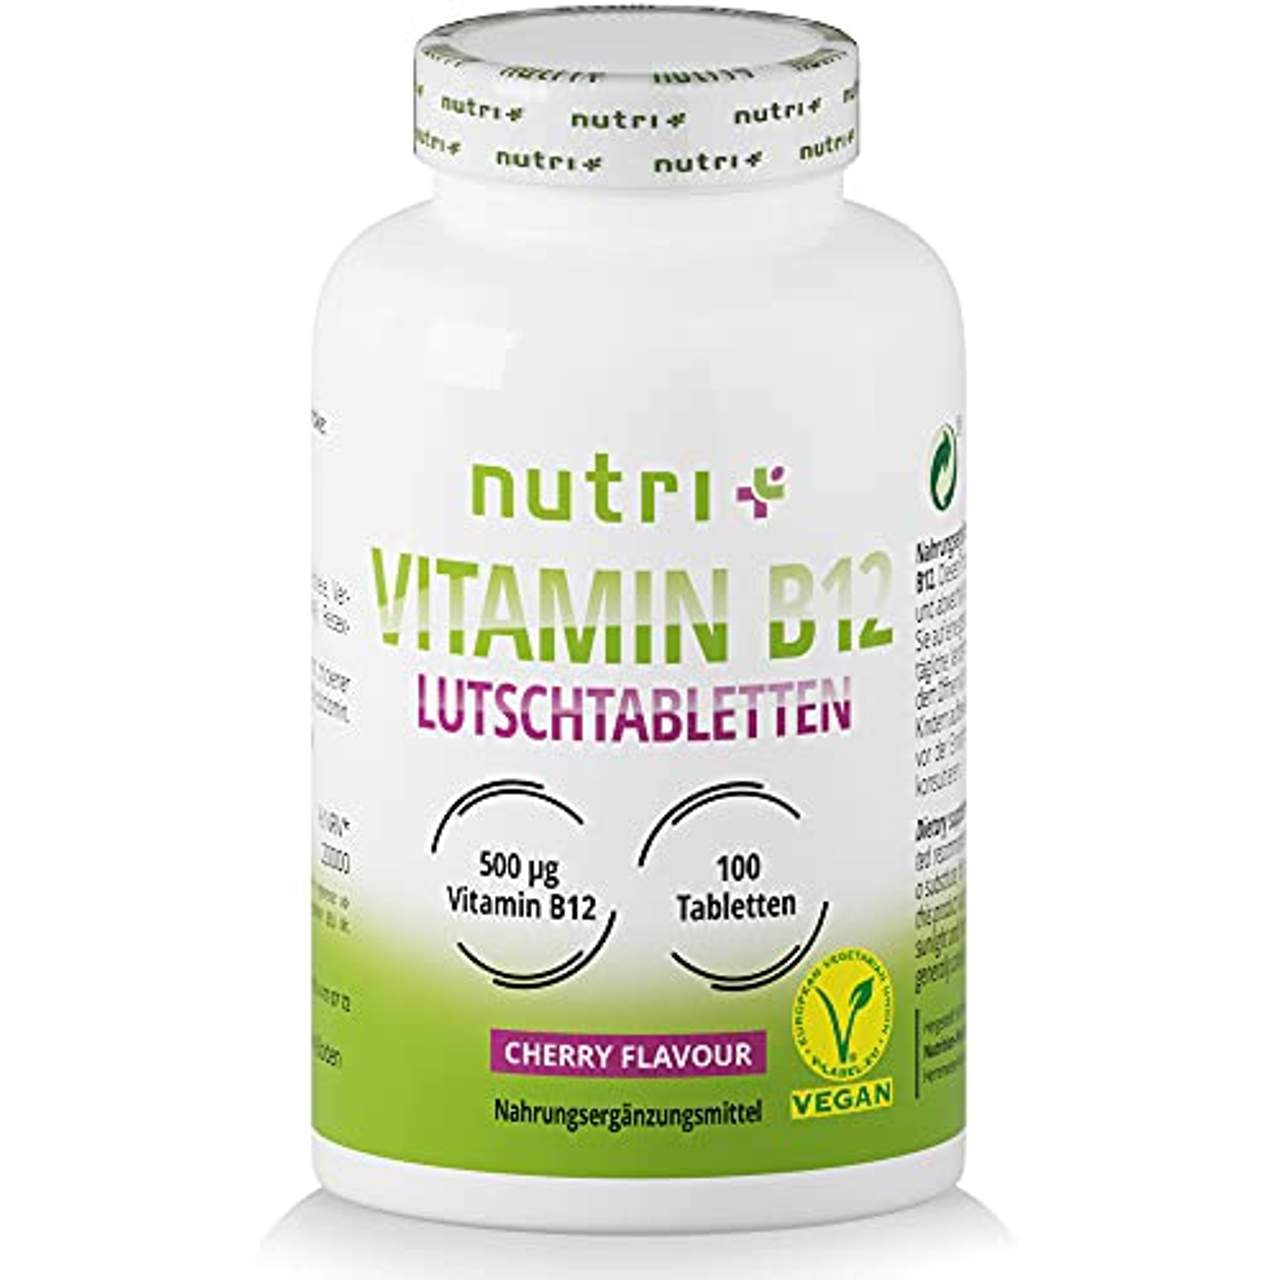 Nutri + Vitamin B12 Lutschtabletten